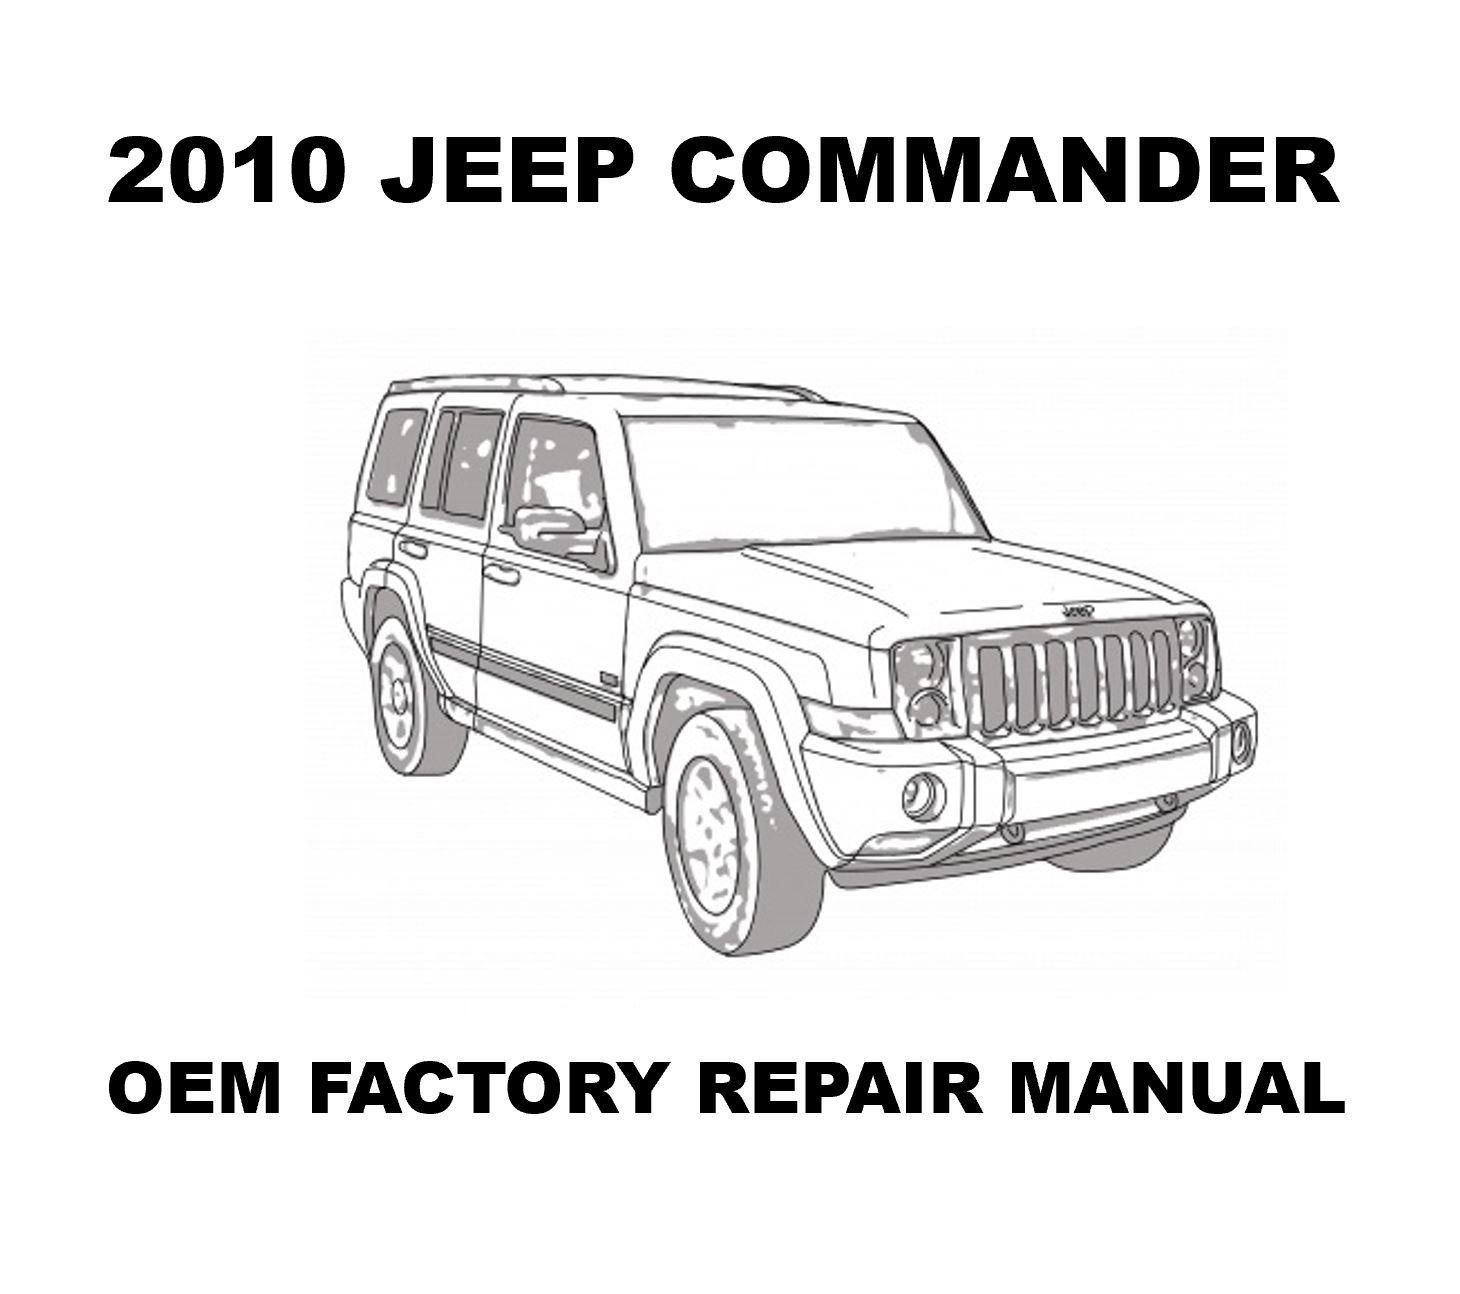 2010_jeep_commander_repair_manual_1460